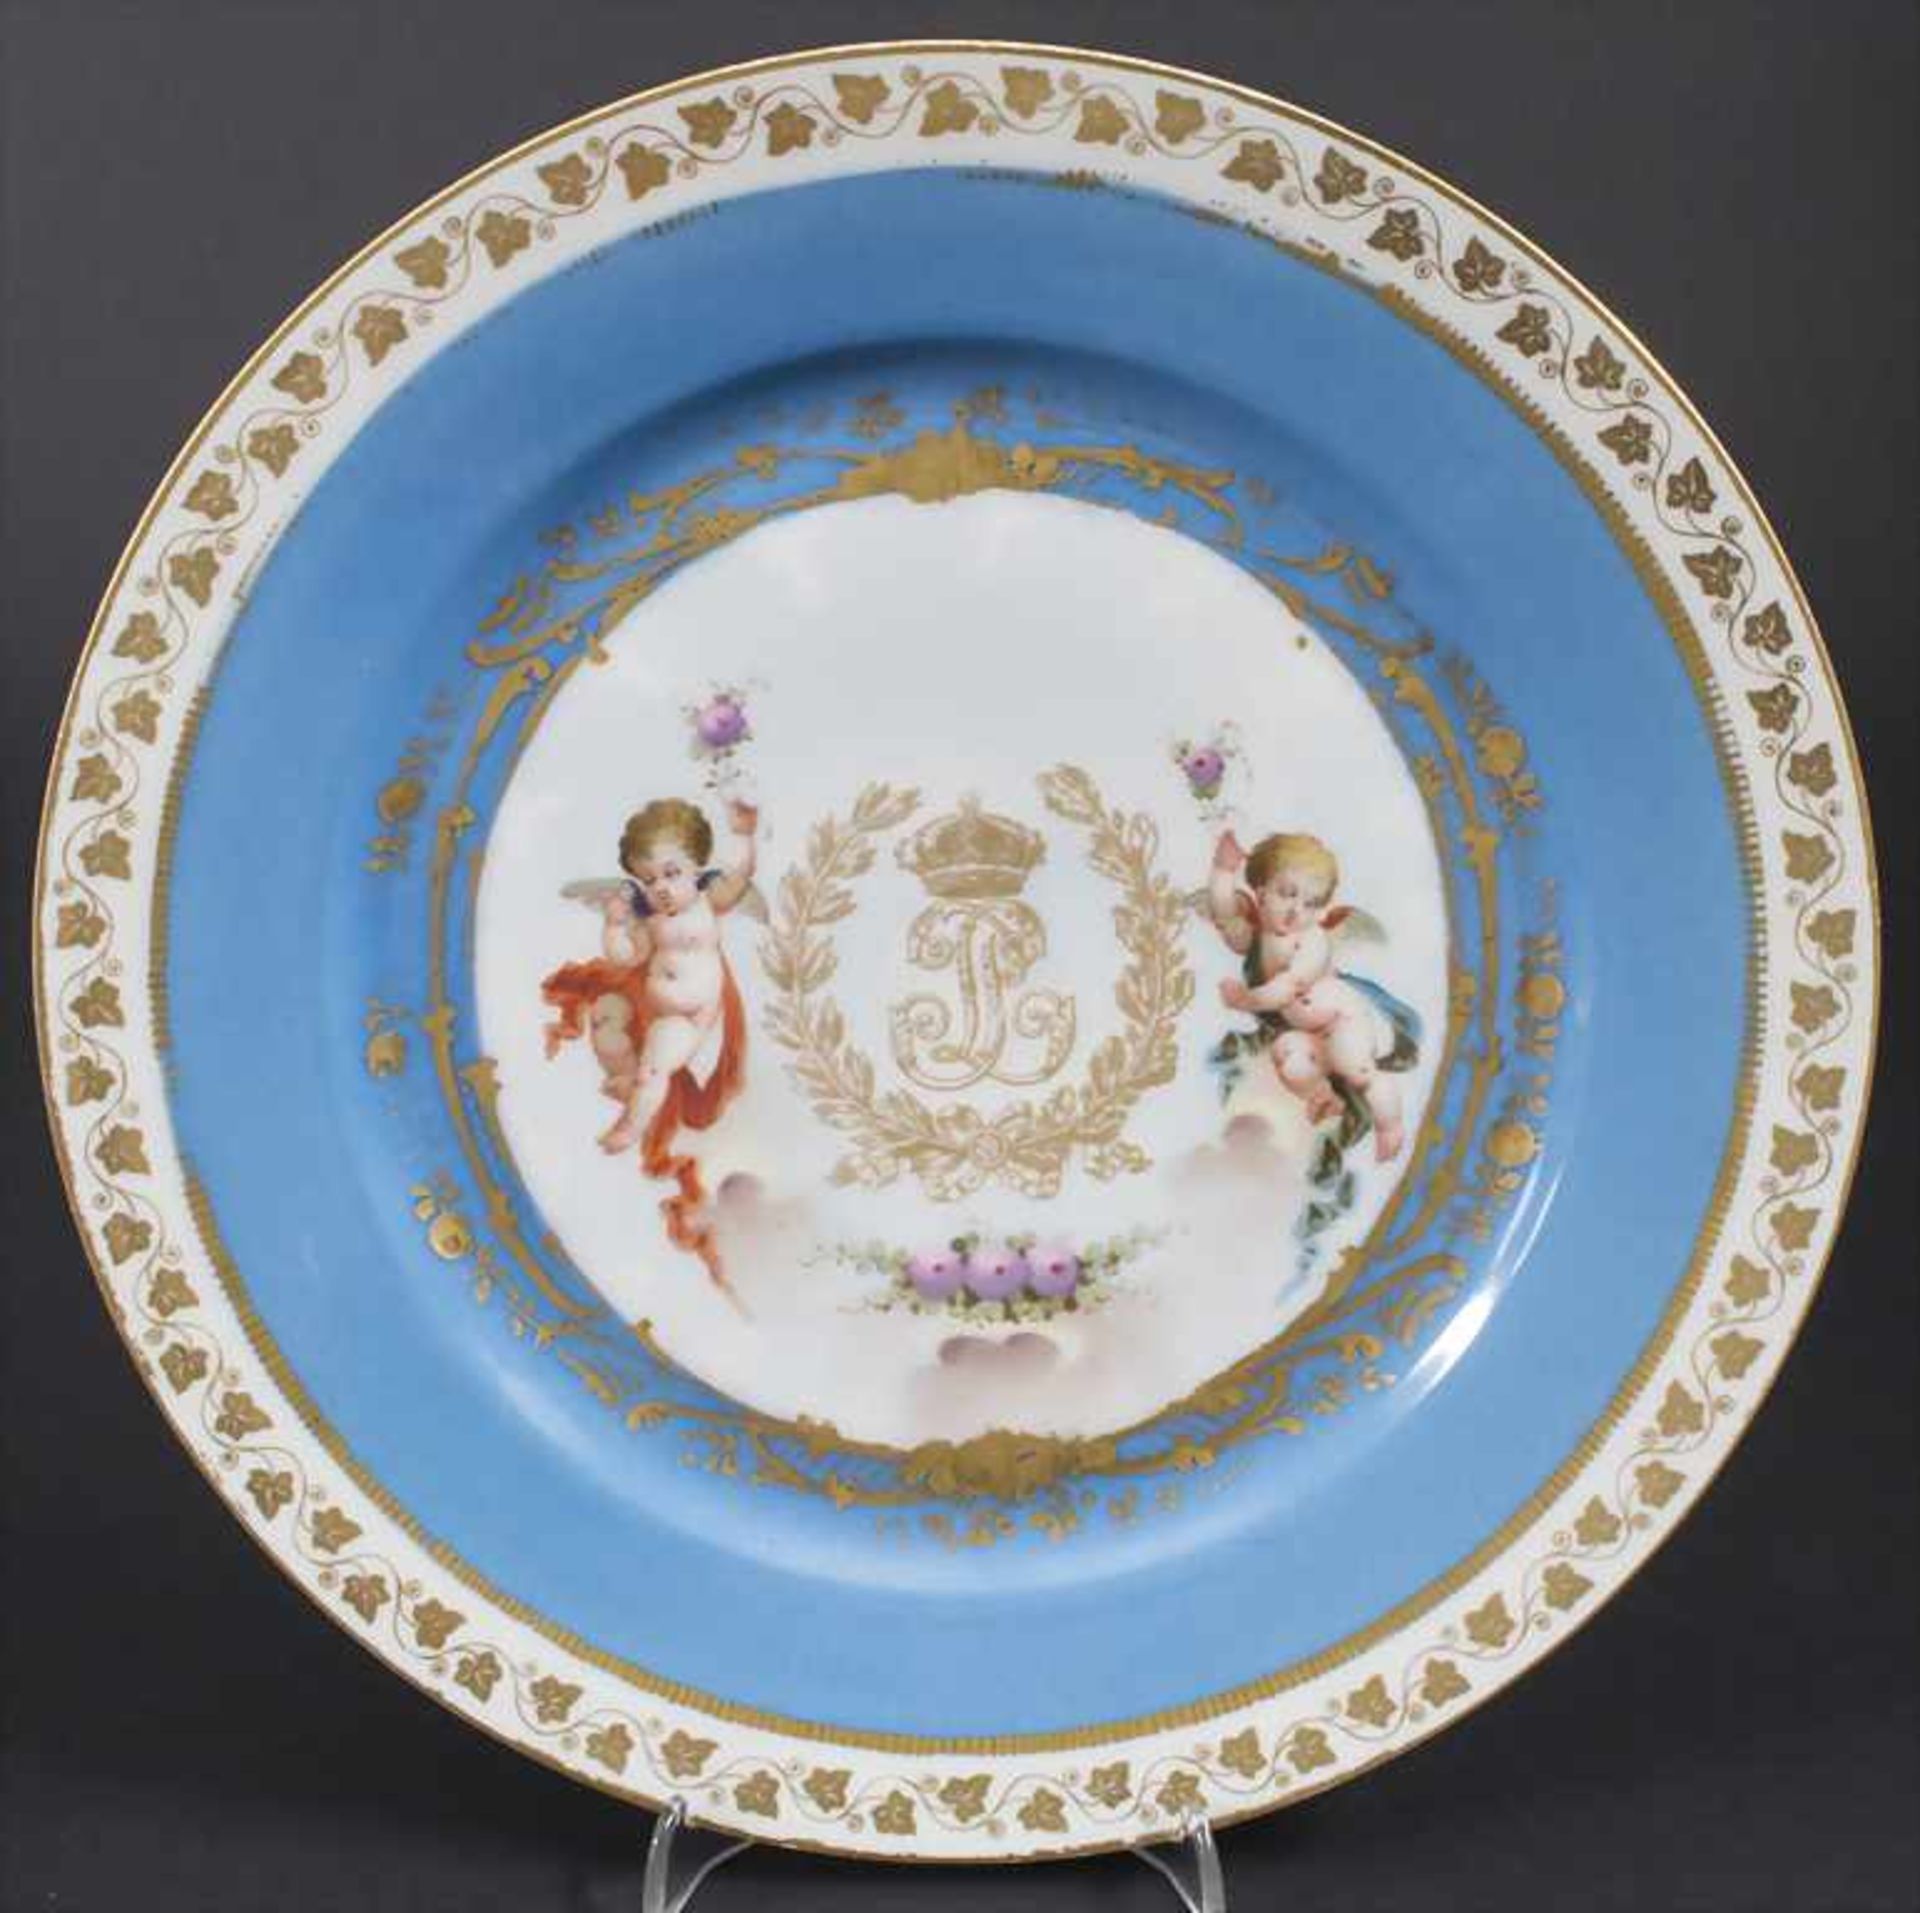 Teller mit 2 Putten und Königsmonogramm / A plate with 2 cherubs and king's monogram, Sèvres,